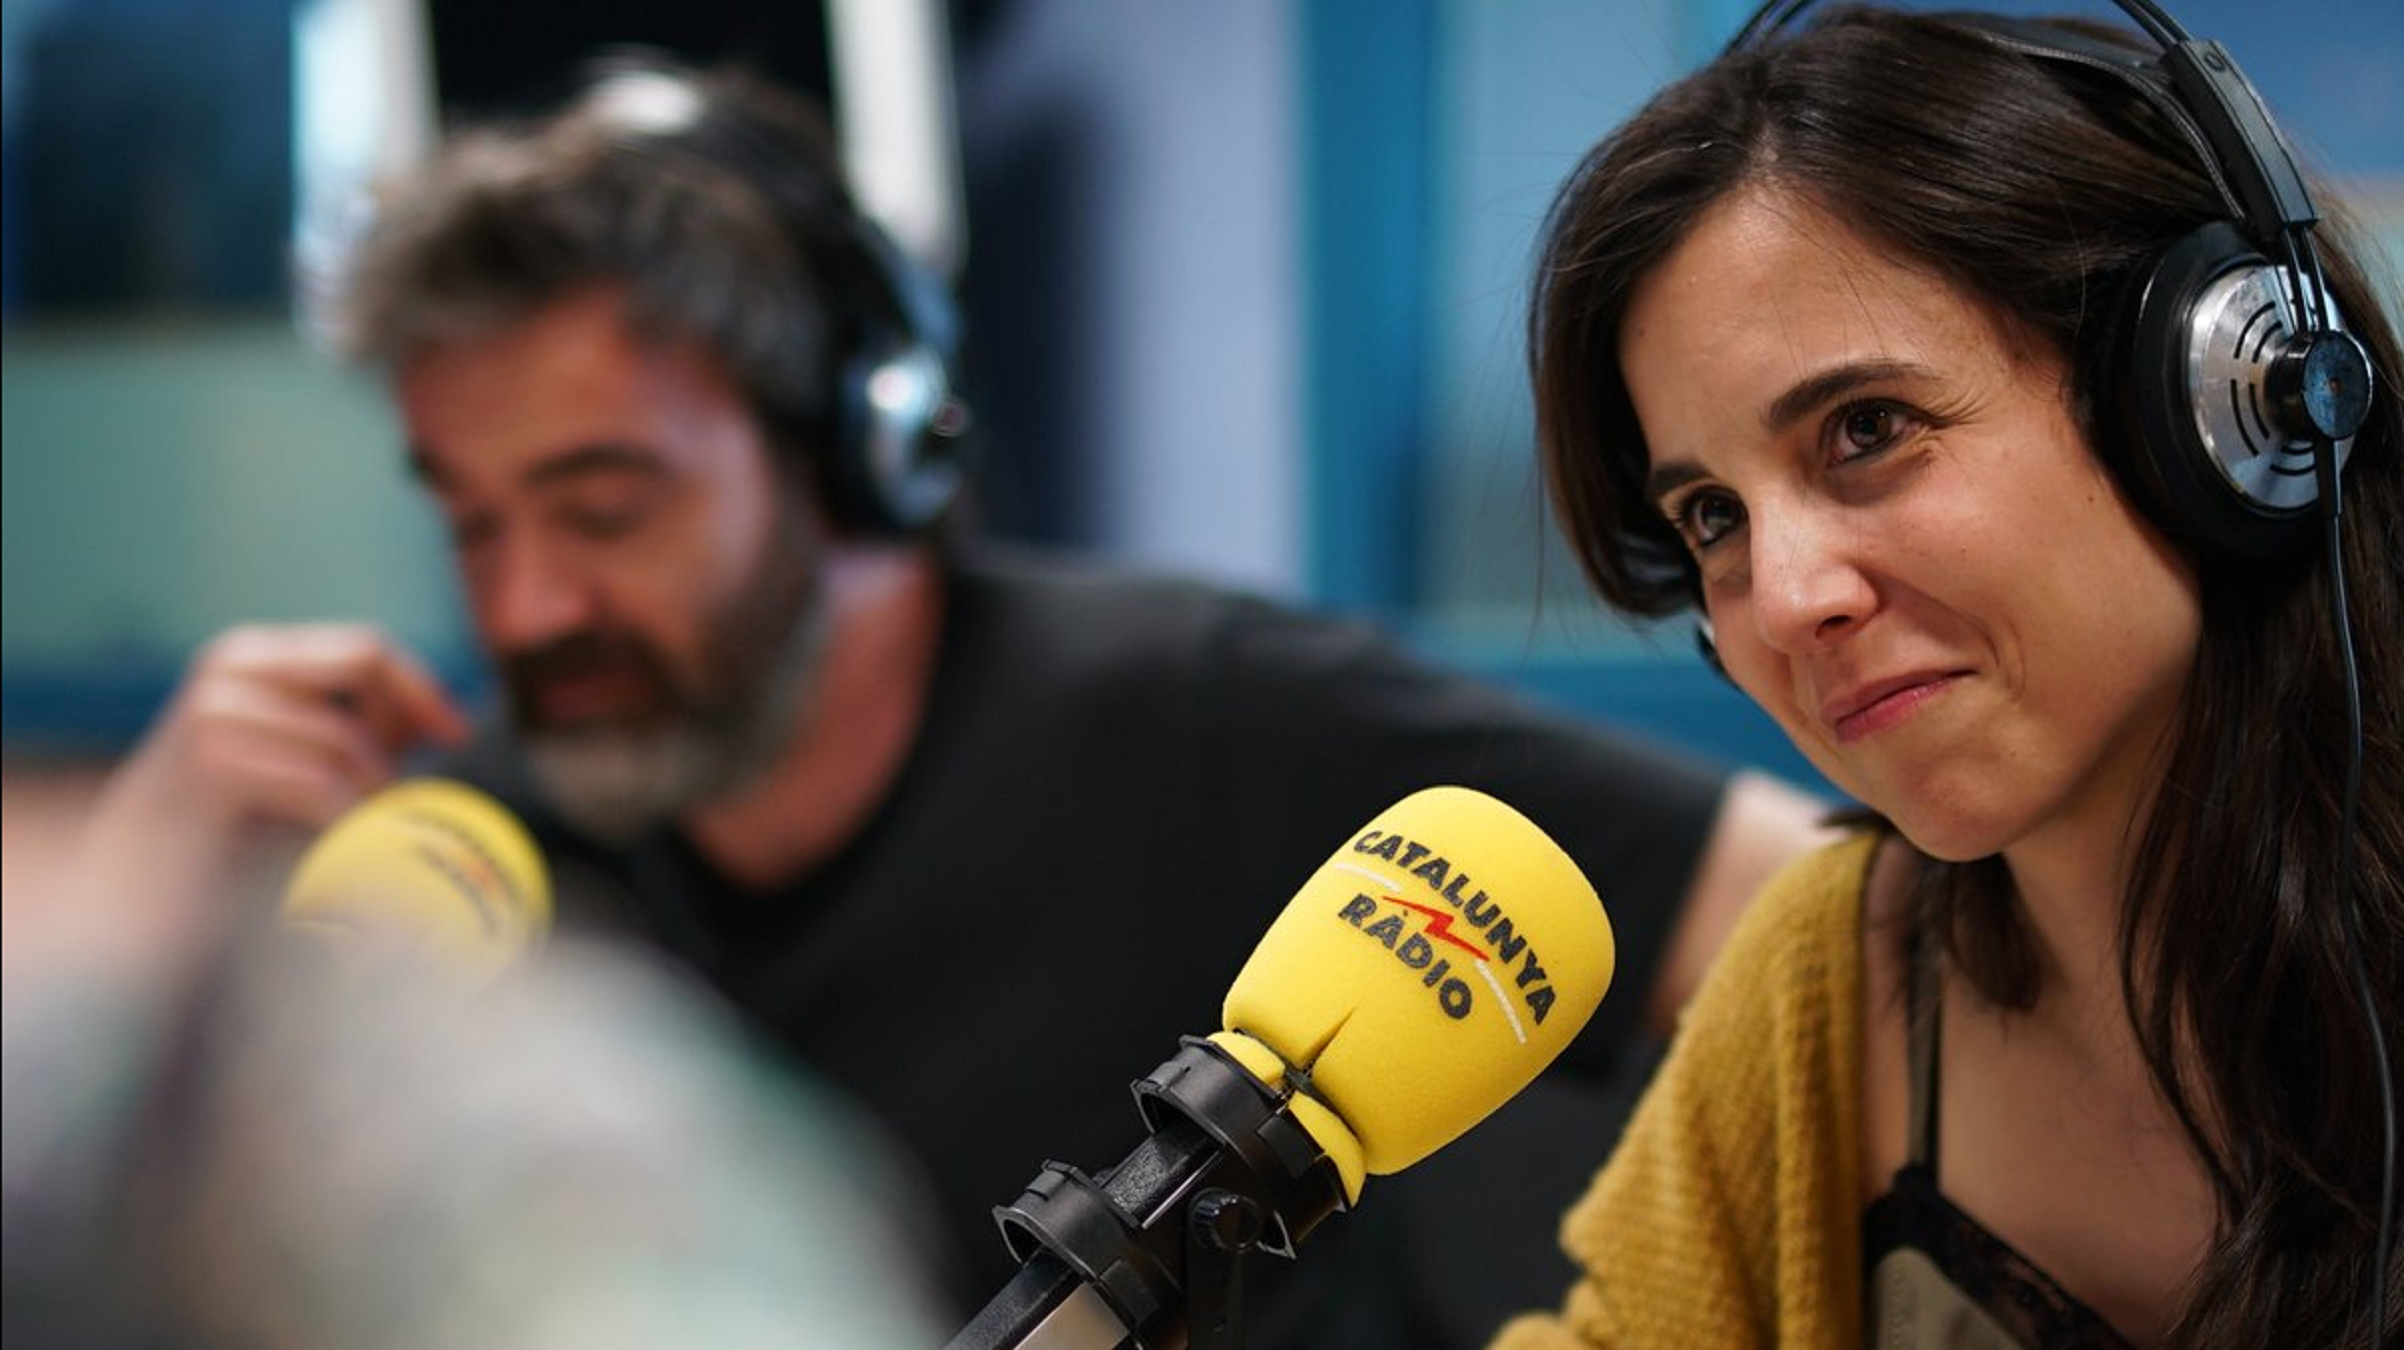 La directora del debate de TV3: "El que más me ha gustado entrevistar es Otegi"